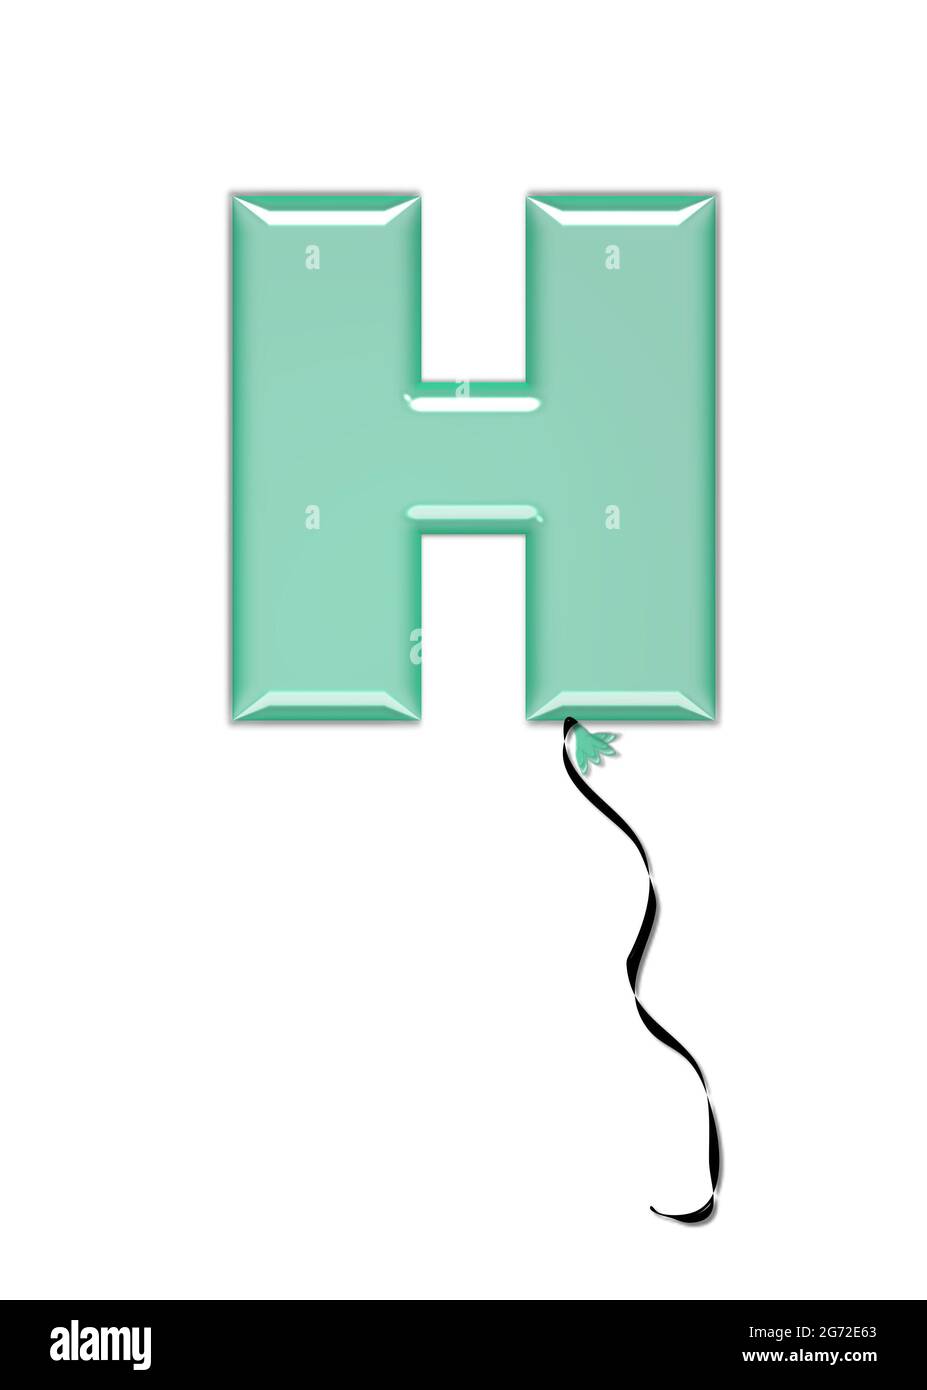 La lettera H, nel set di alfabeti Gioielli Balloon, assomiglia ad un pallone gonfiato legato al nodo con una corda nera riccia. Le lettere, in serie, entrano Foto Stock